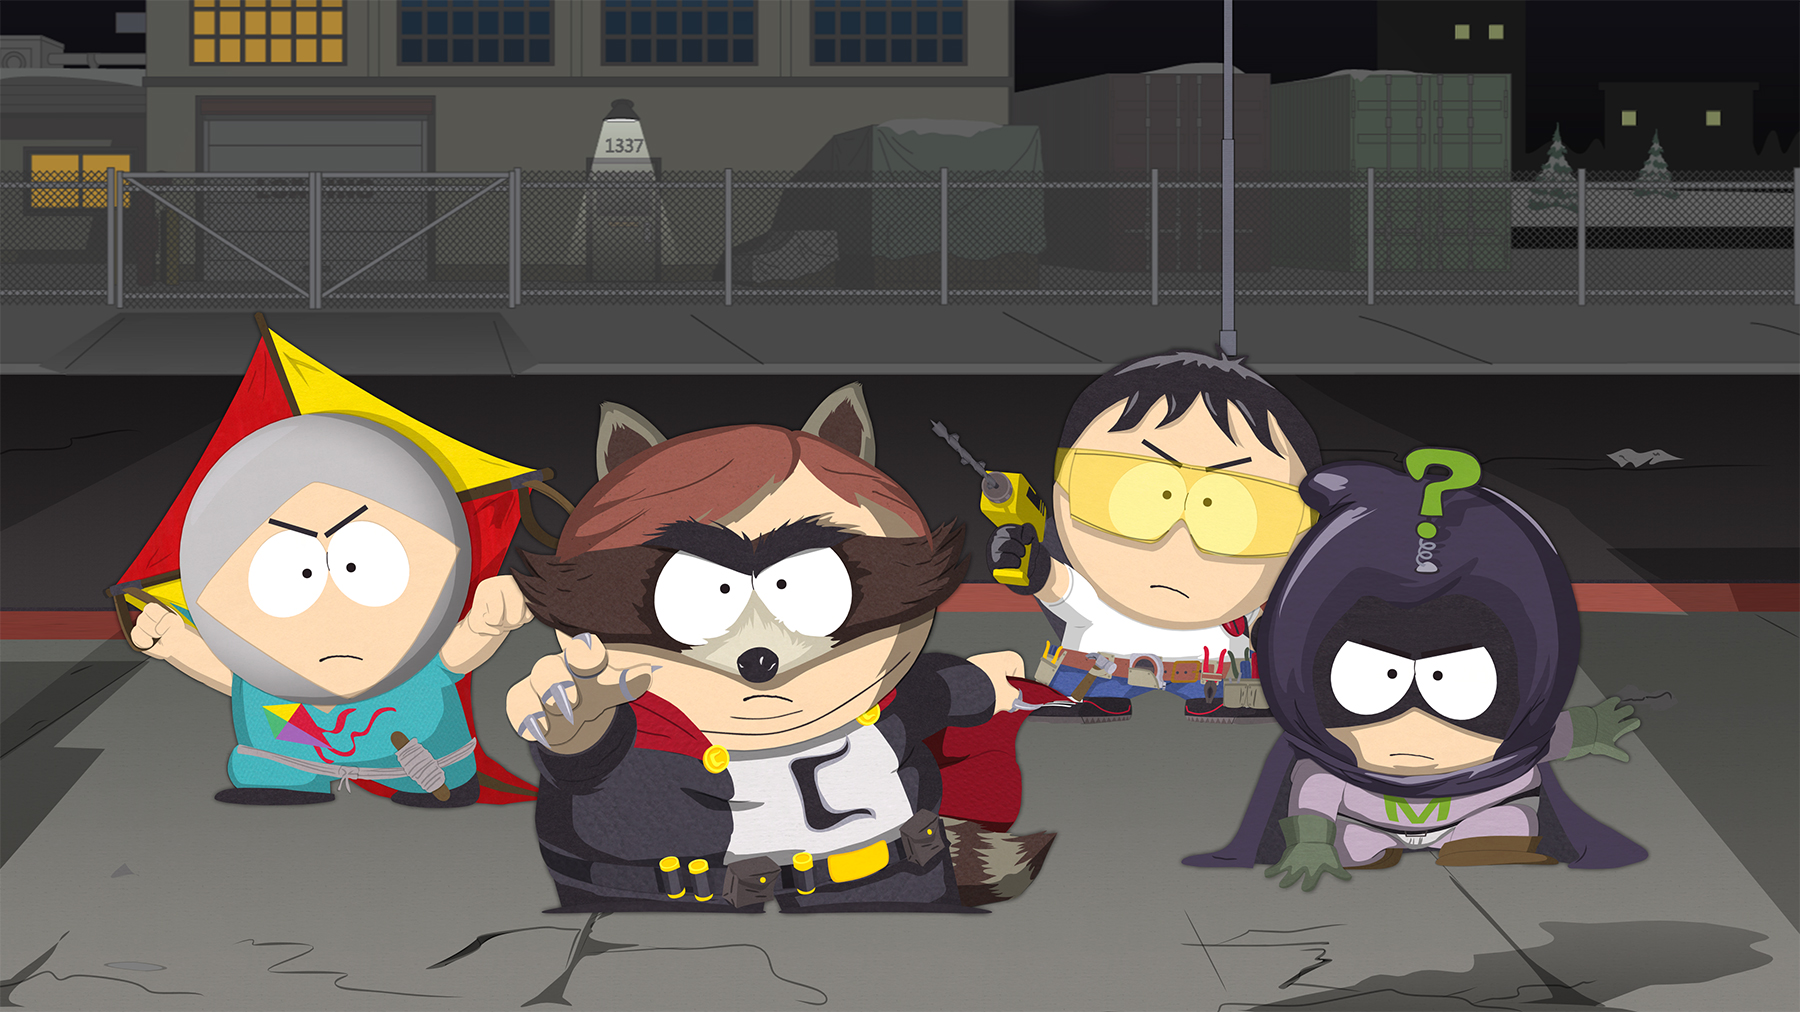 South Park: Gutes Spiel, doch einige Schwächen trüben den Heldenspaß. (Bild: Ubisoft)